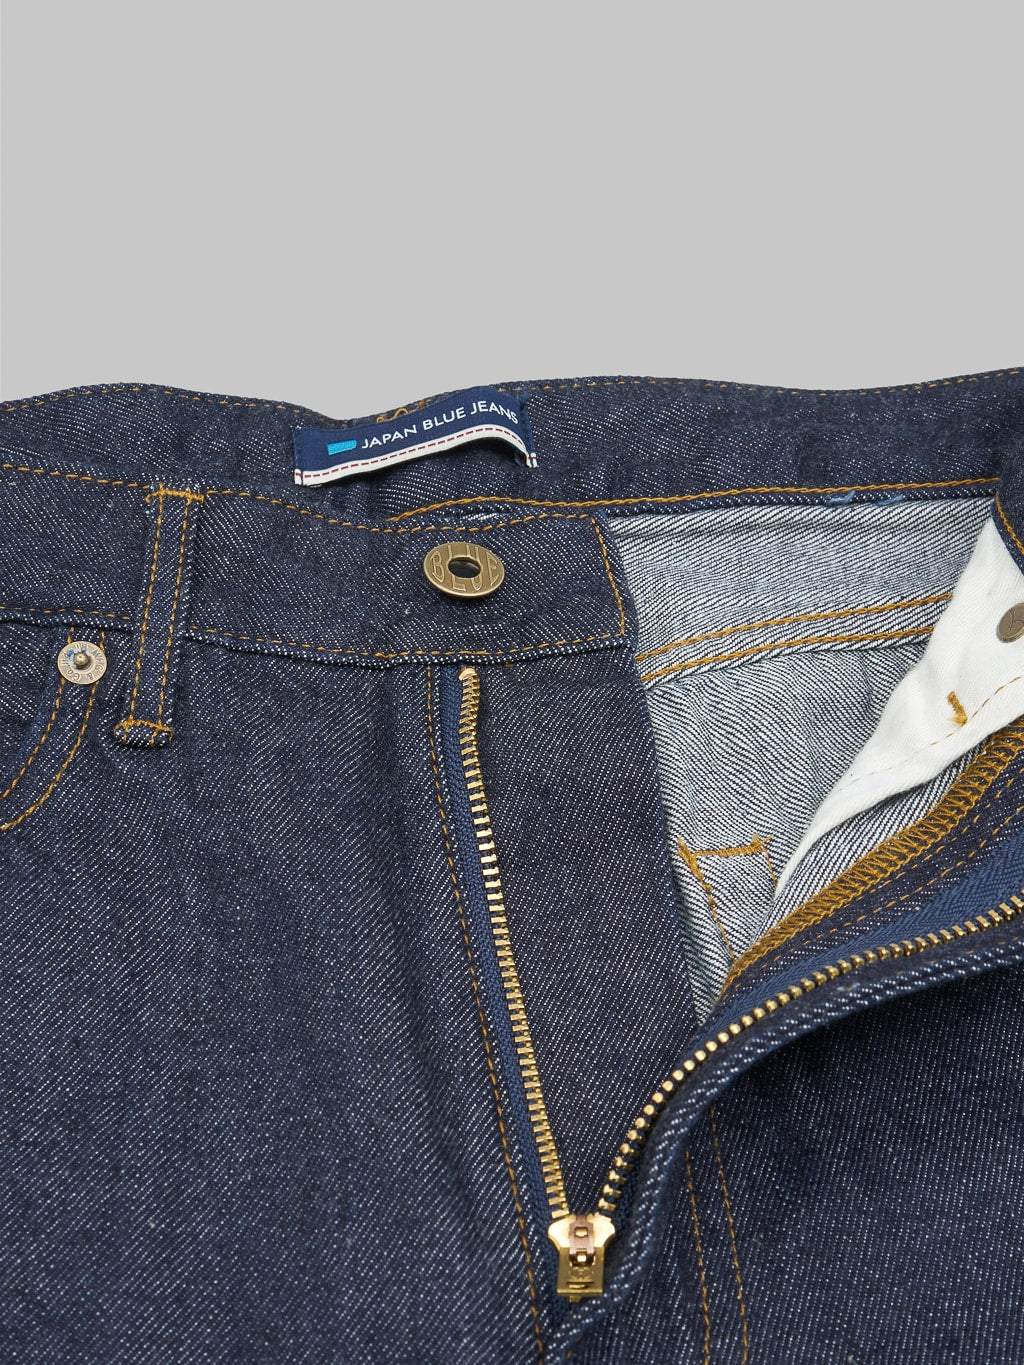 Japan Blue J508 lightweight selvedge denim loose Jeans zipper